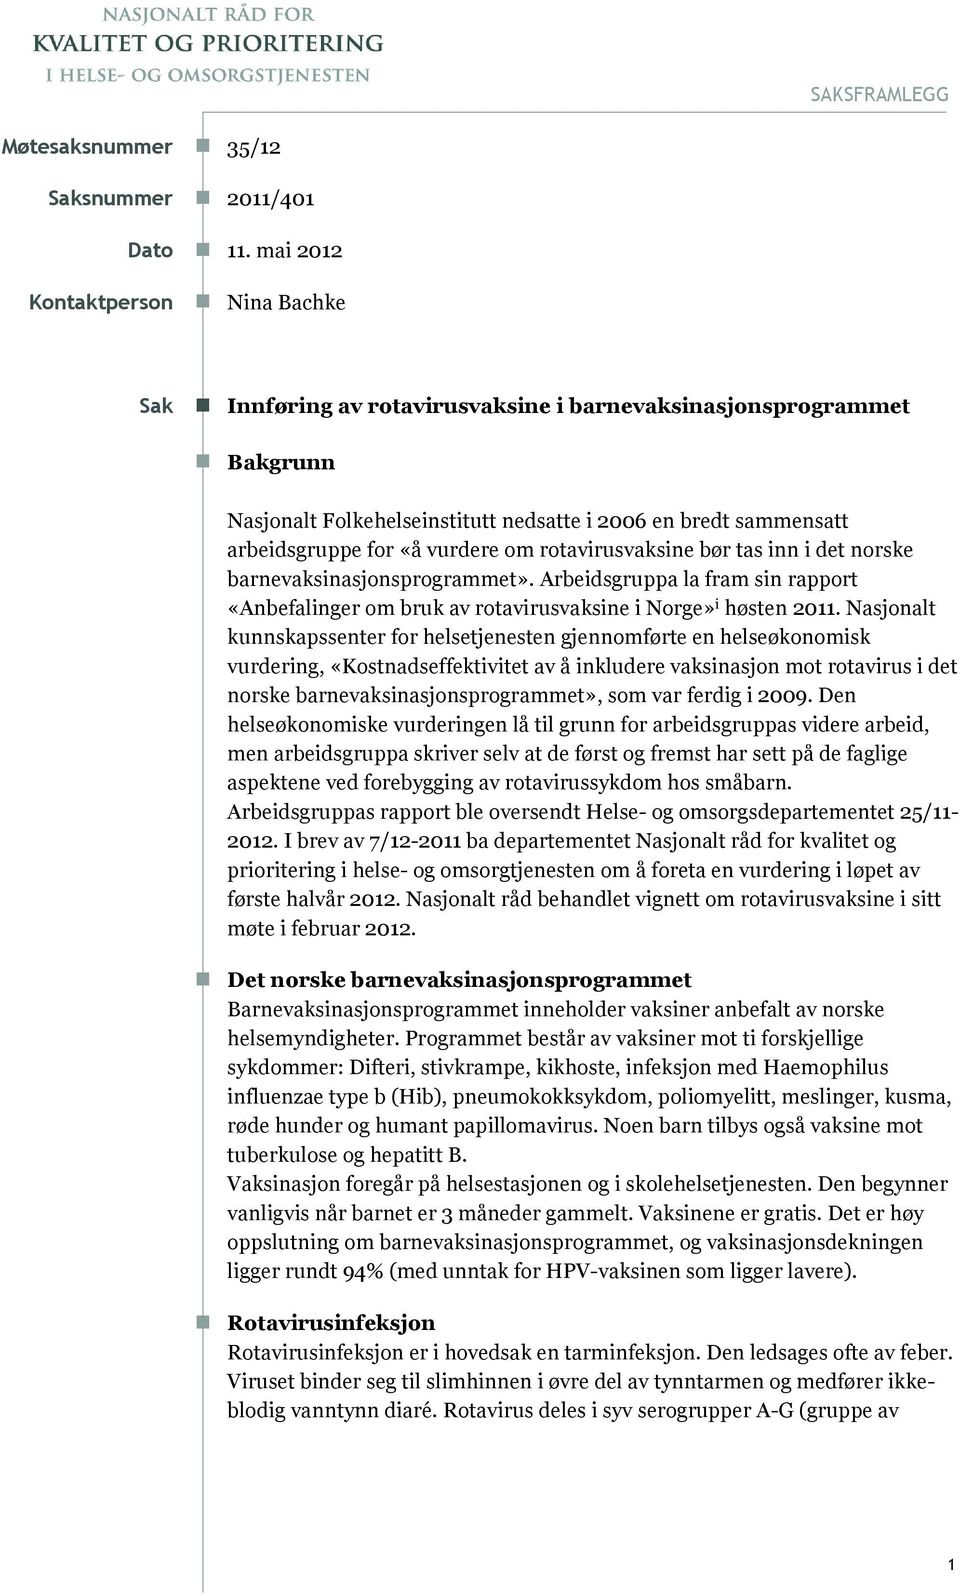 vurdere om rotavirusvaksine bør tas inn i det norske barnevaksinasjonsprogrammet». Arbeidsgruppa la fram sin rapport «Anbefalinger om bruk av rotavirusvaksine i Norge» i høsten 2011.